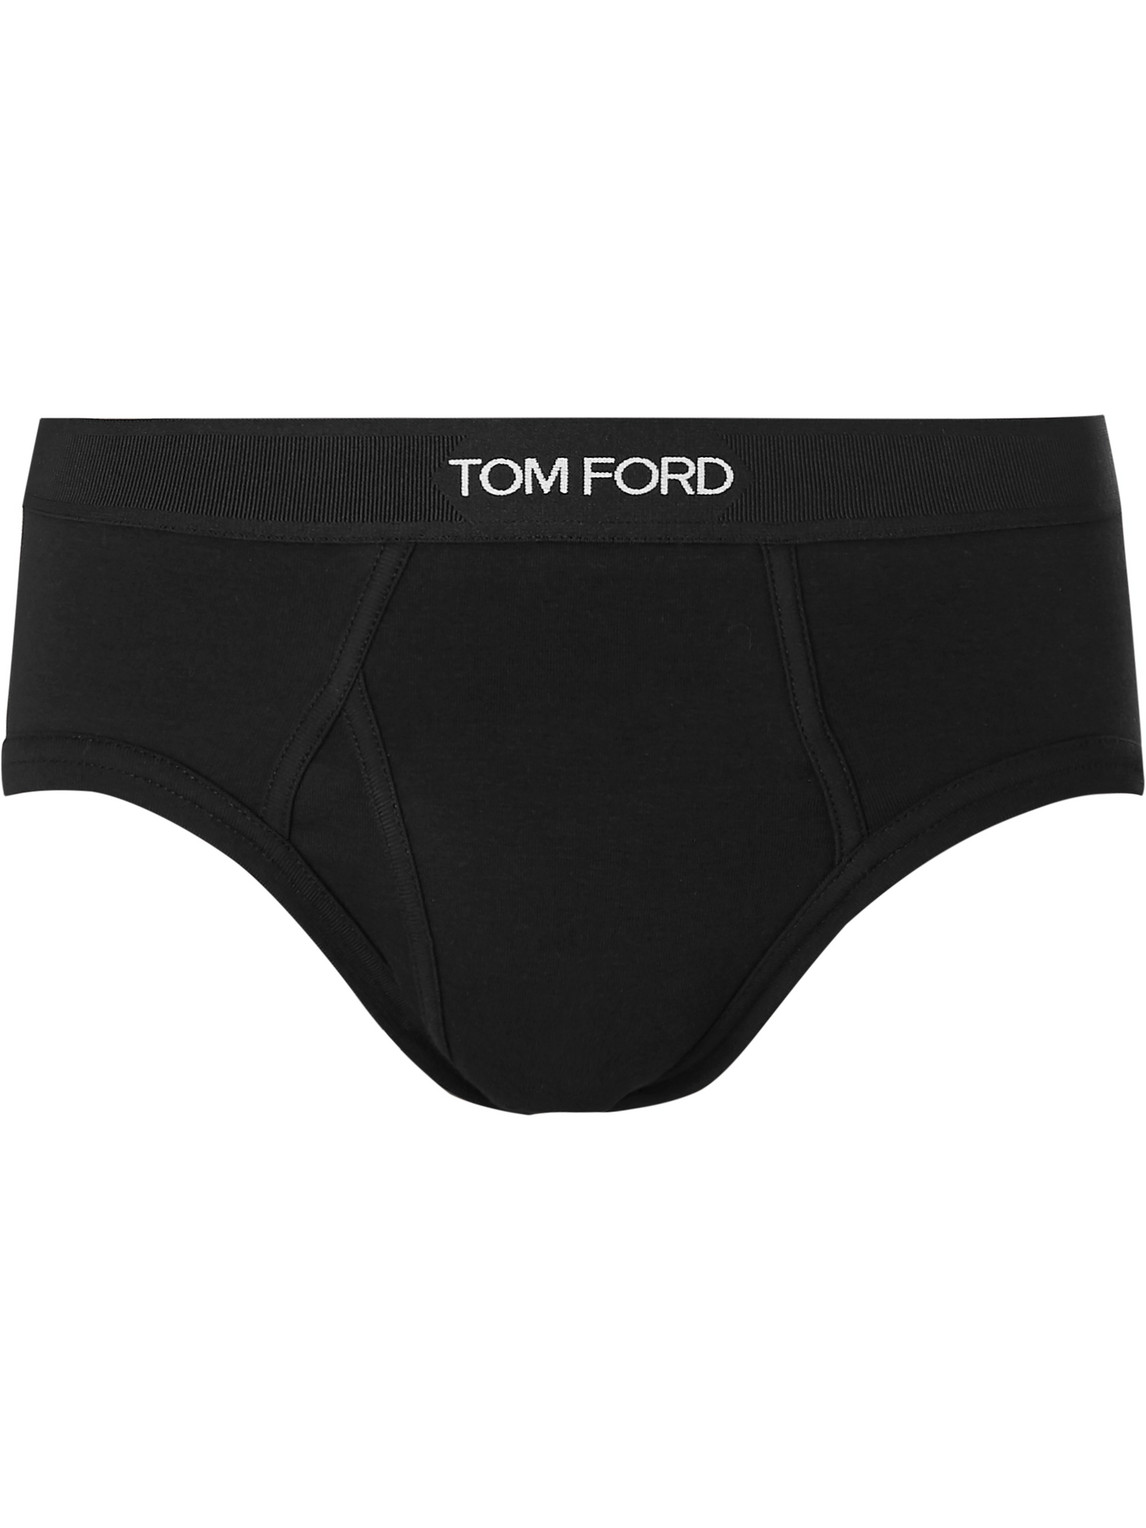 TOM FORD - Stretch-Cotton Briefs - Men - Black - XXL von TOM FORD